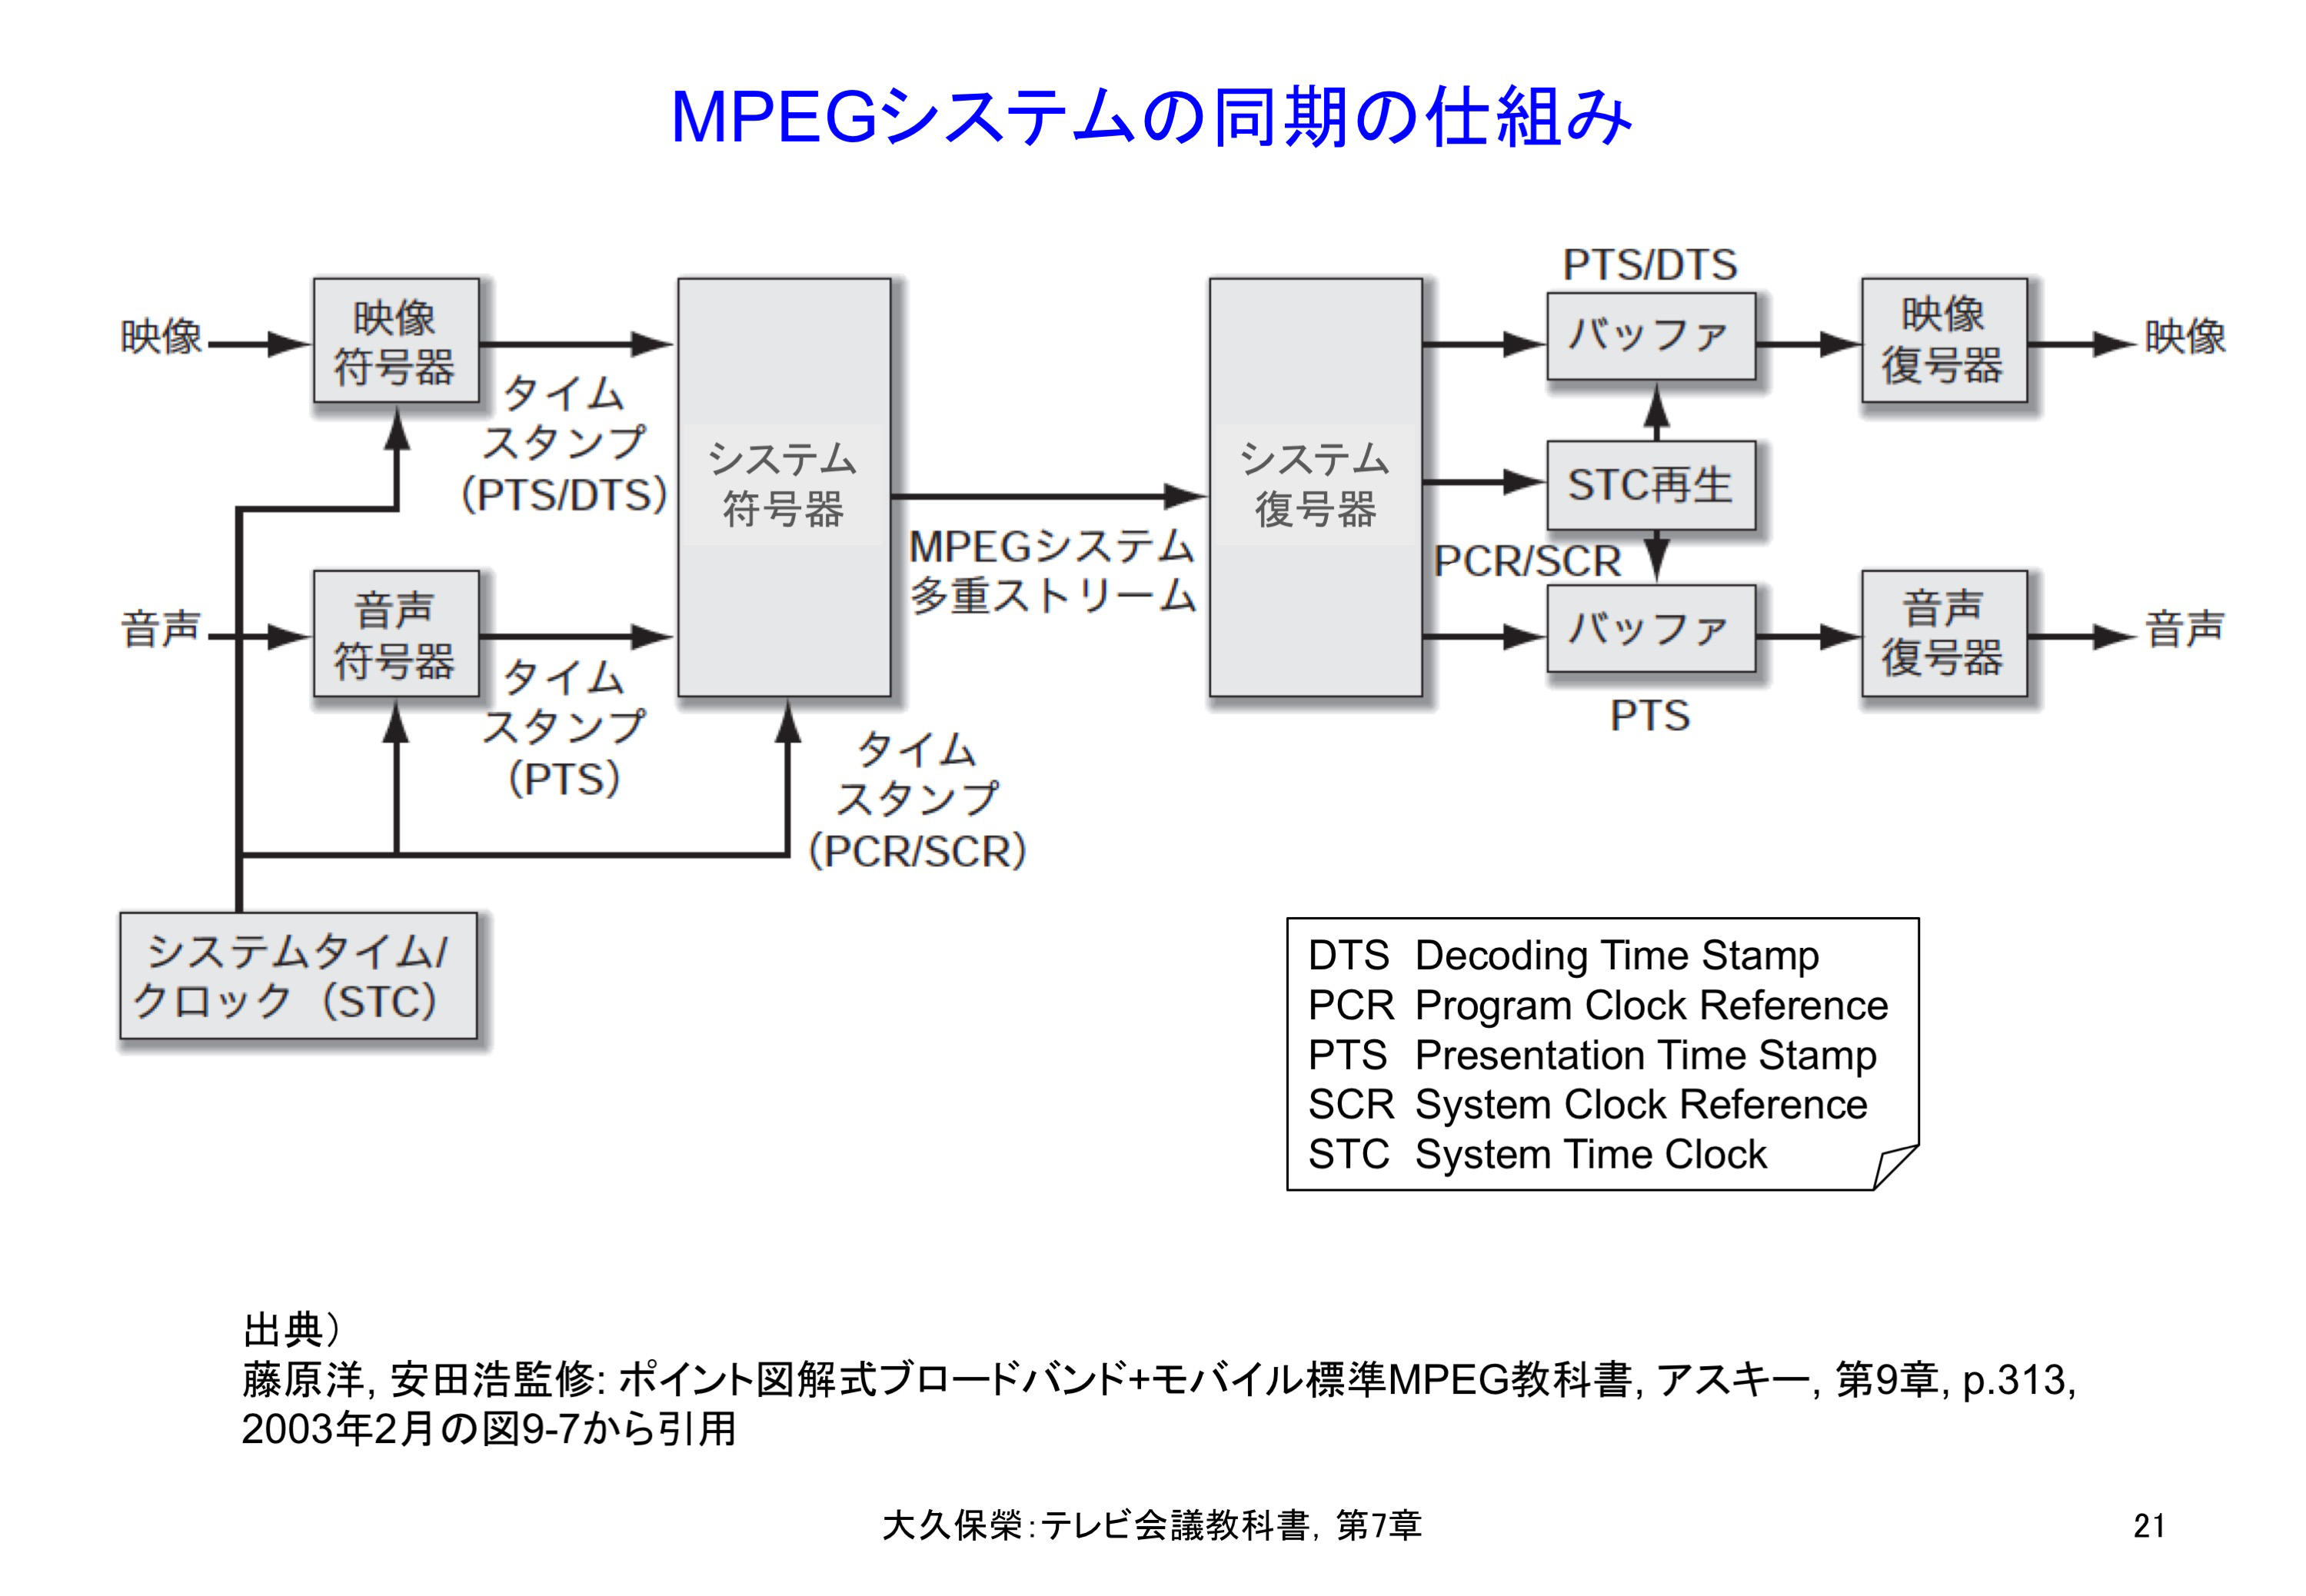 図7-21 MPEGシステムの同期の仕組み